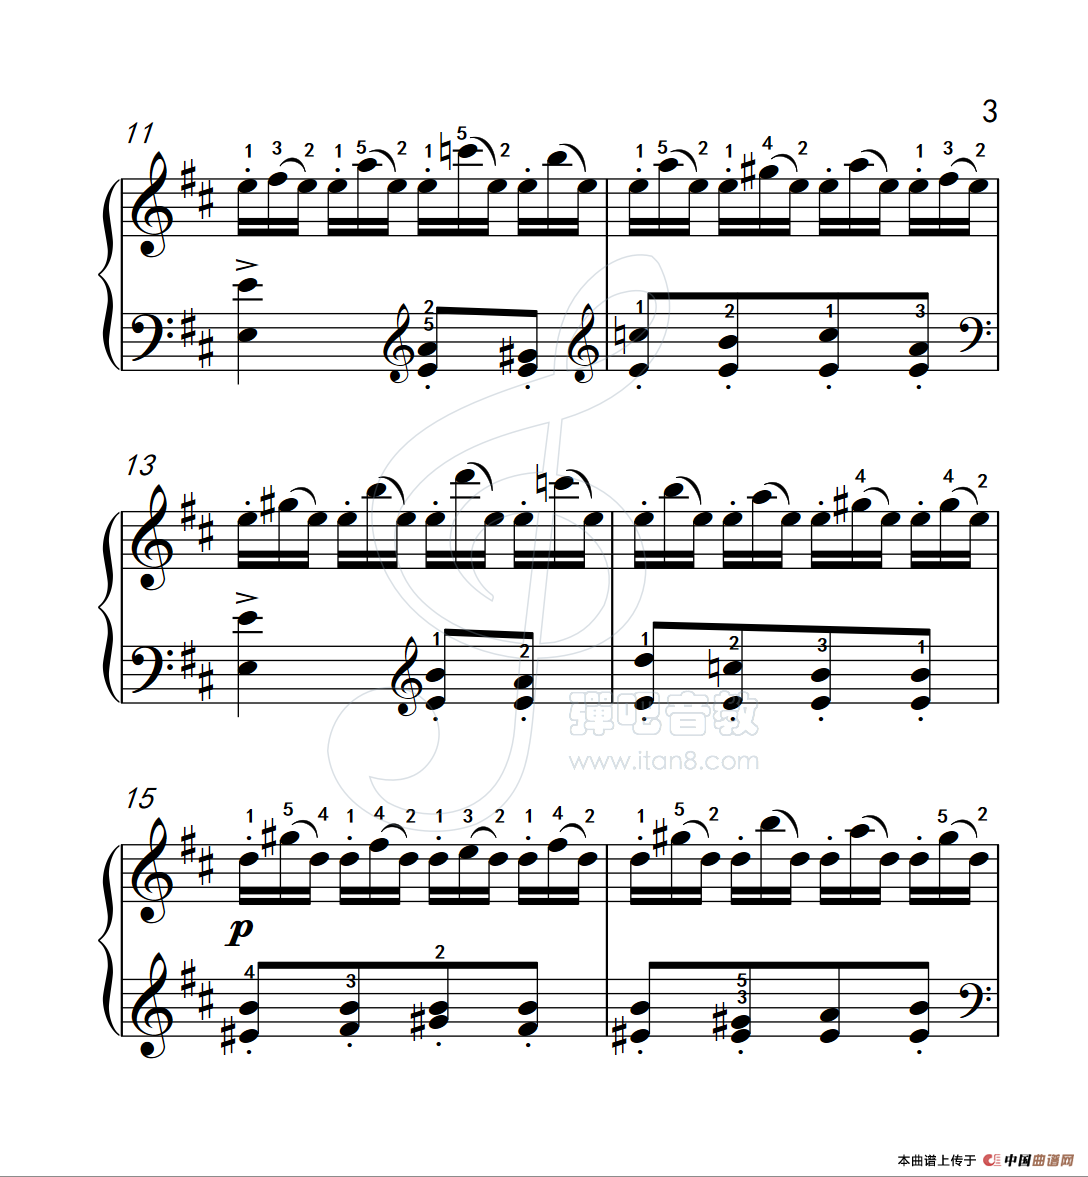 《练习曲 45》钢琴曲谱图分享